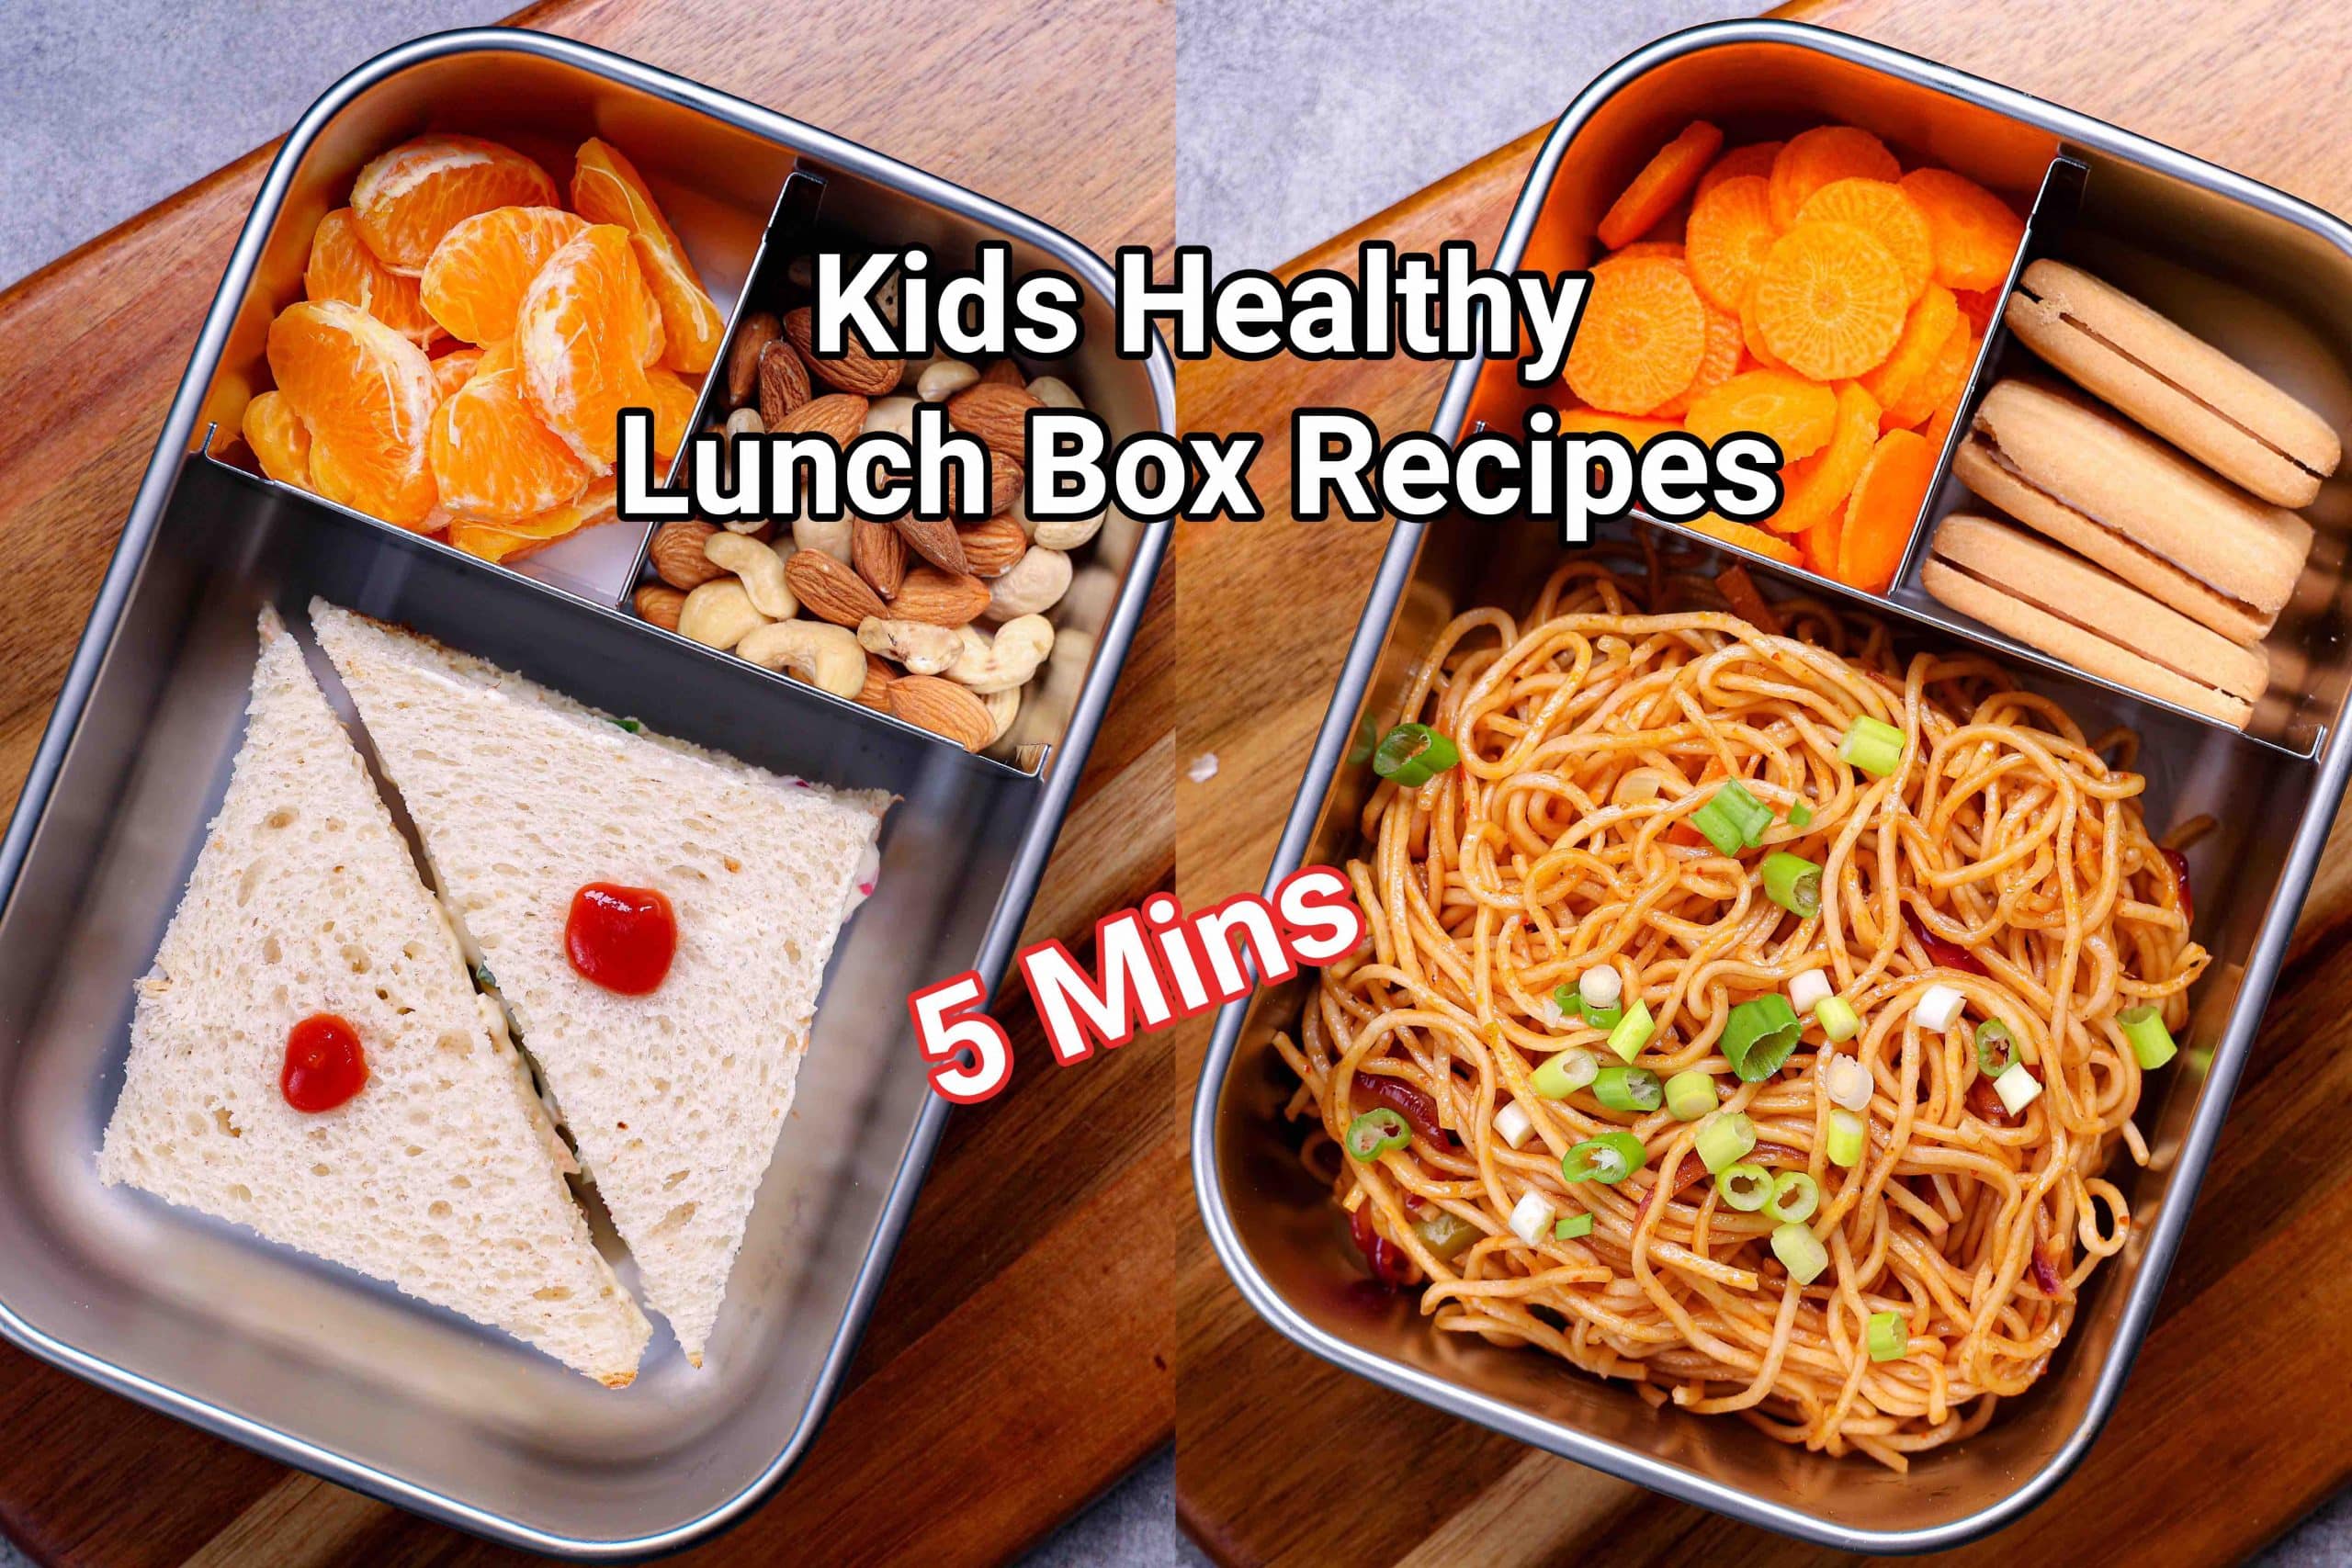 monday to saturday kids tiffin box recipes, 6 तरीके के टिफ़िन बच्चो के लिए